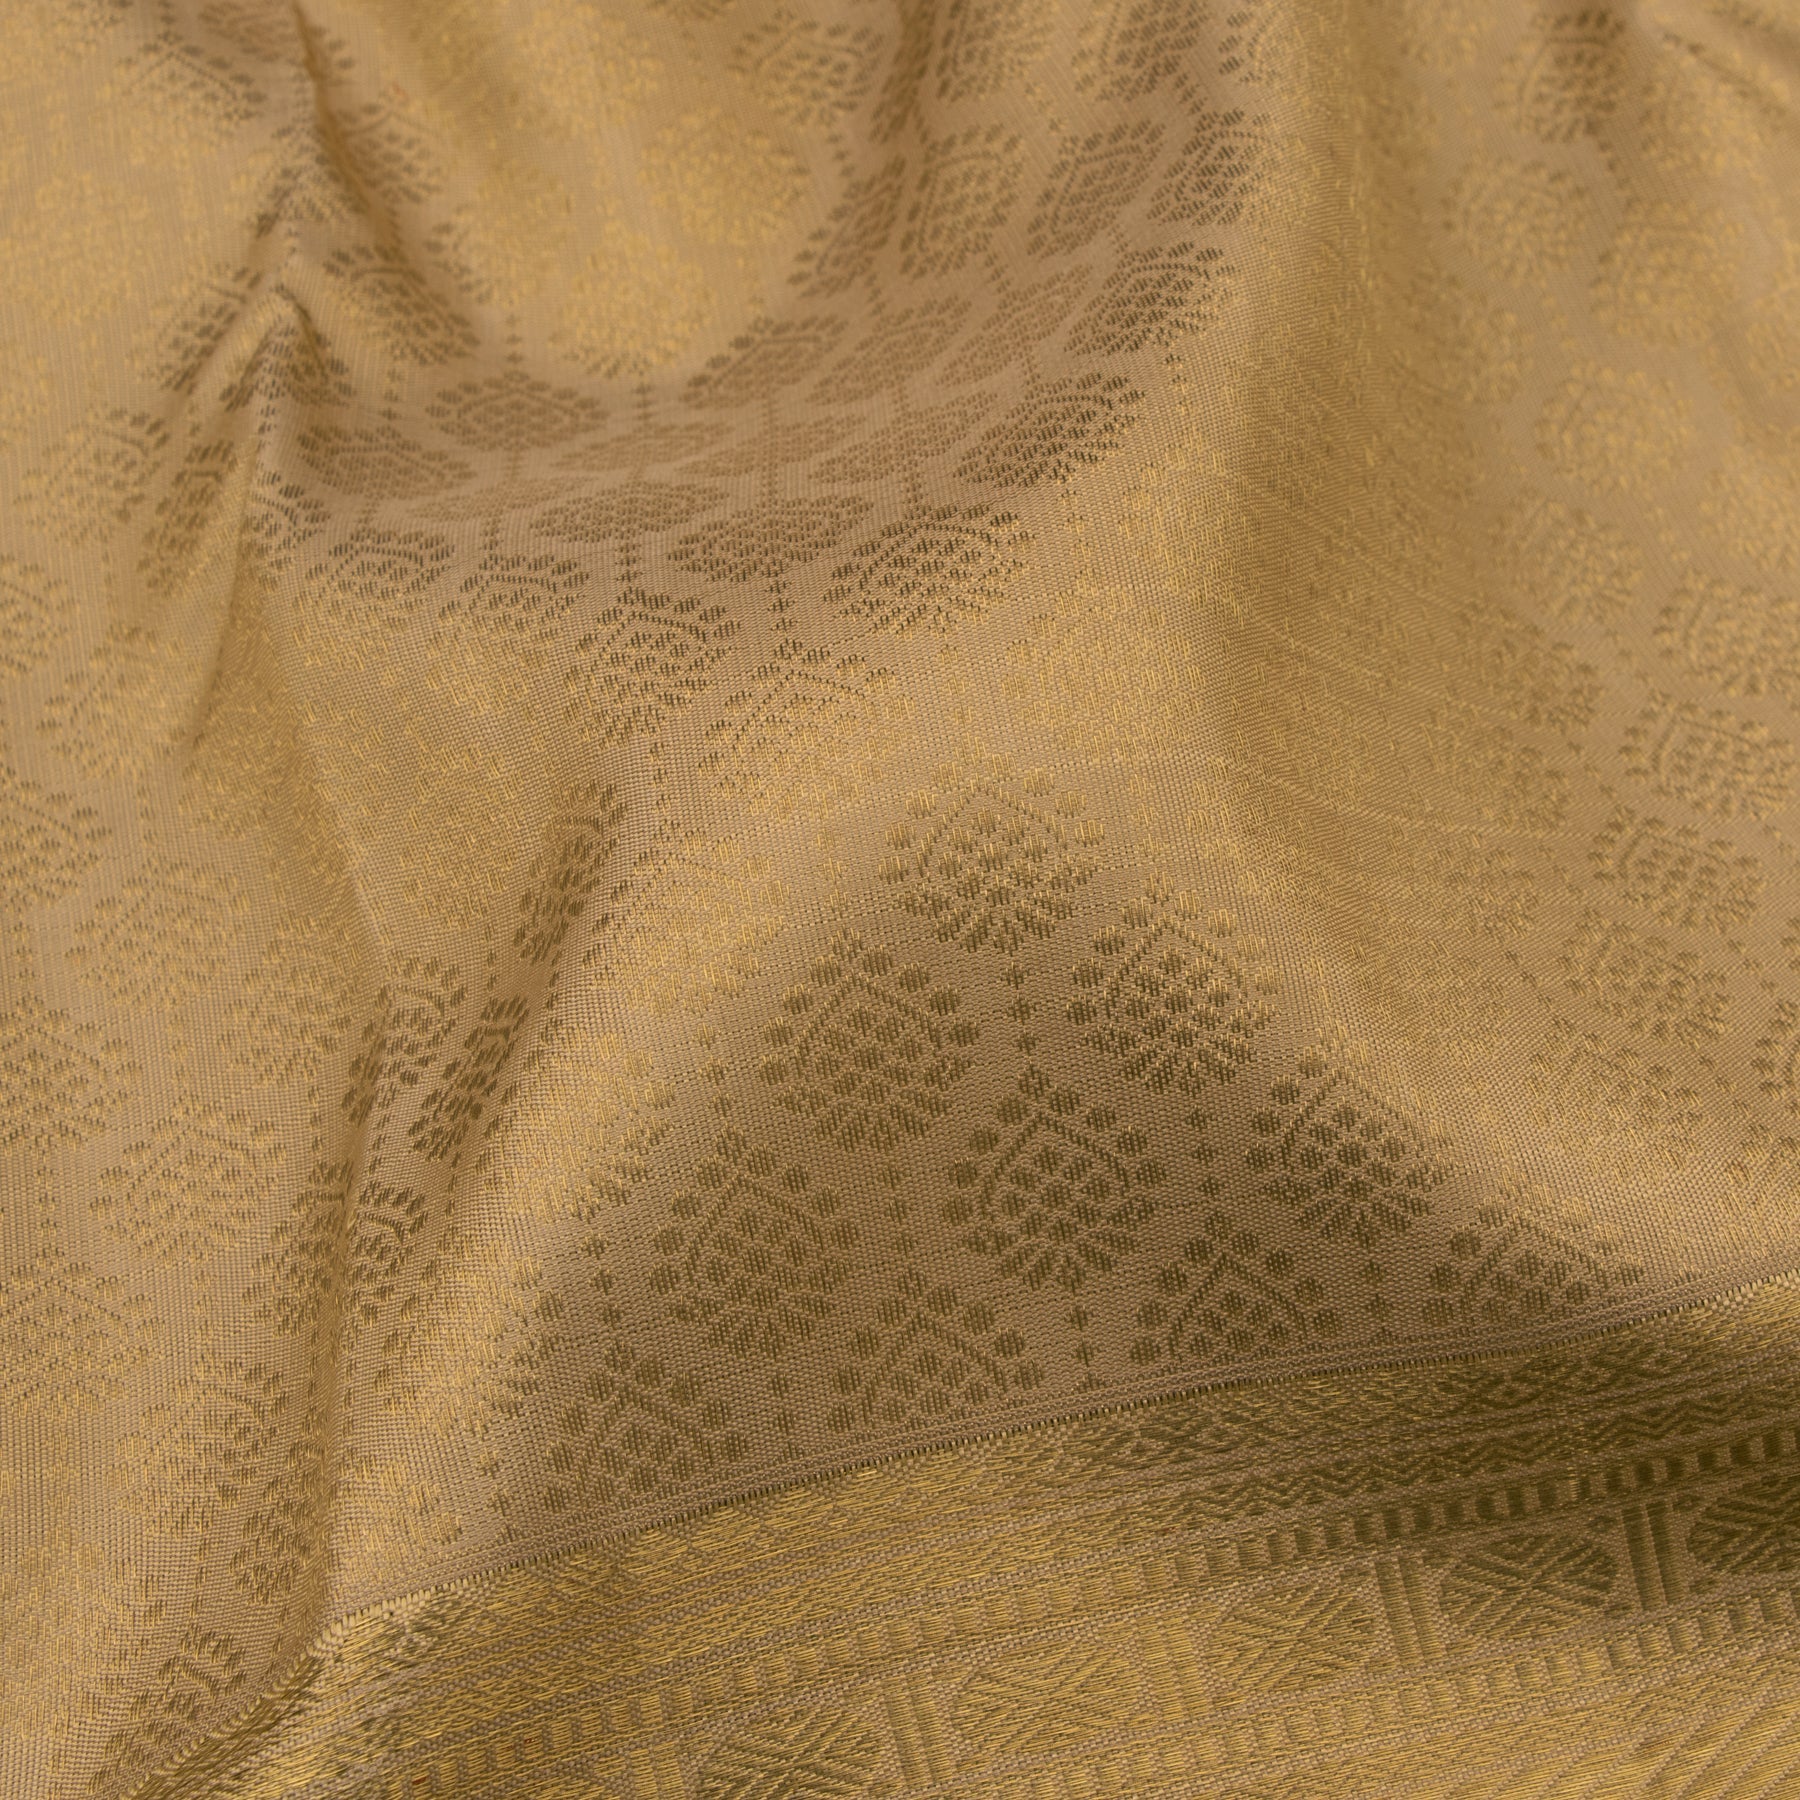 Kanakavalli Kanjivaram Silk Sari 21-110-HS001-03729 - Fabric View